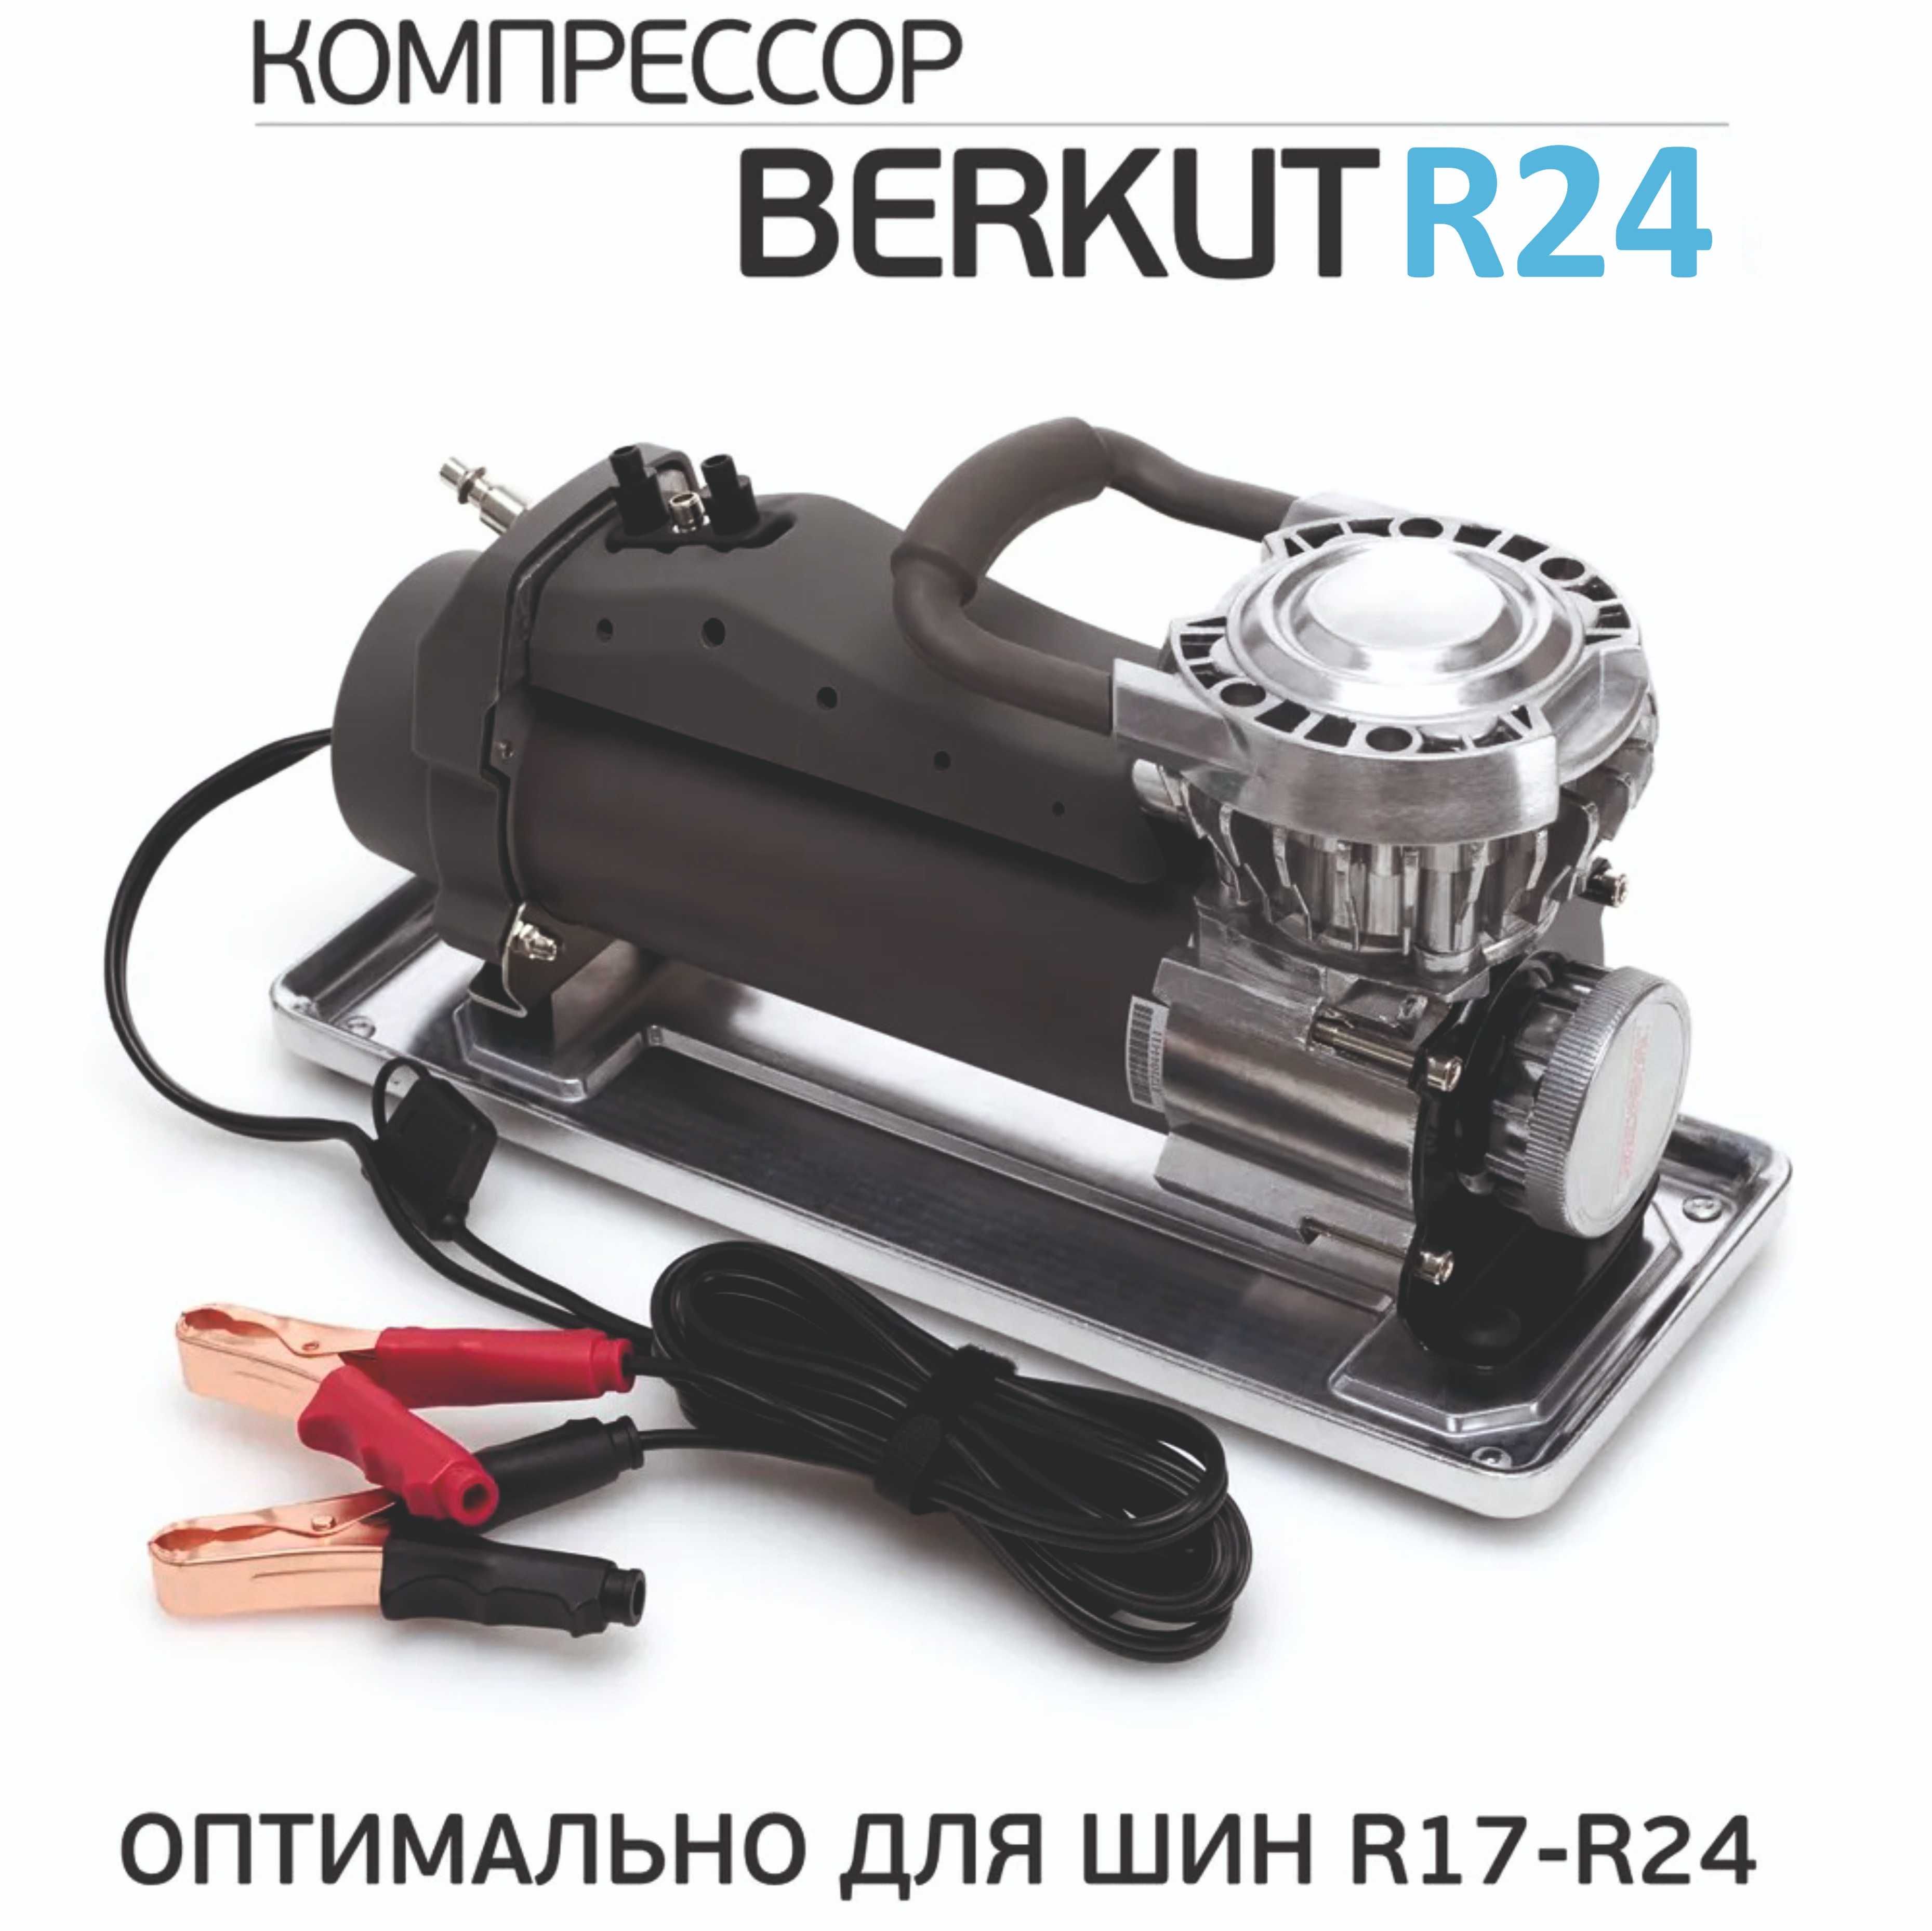 Компрессор автомобильный BERKUT R24 (98л/мин) 14 Атм